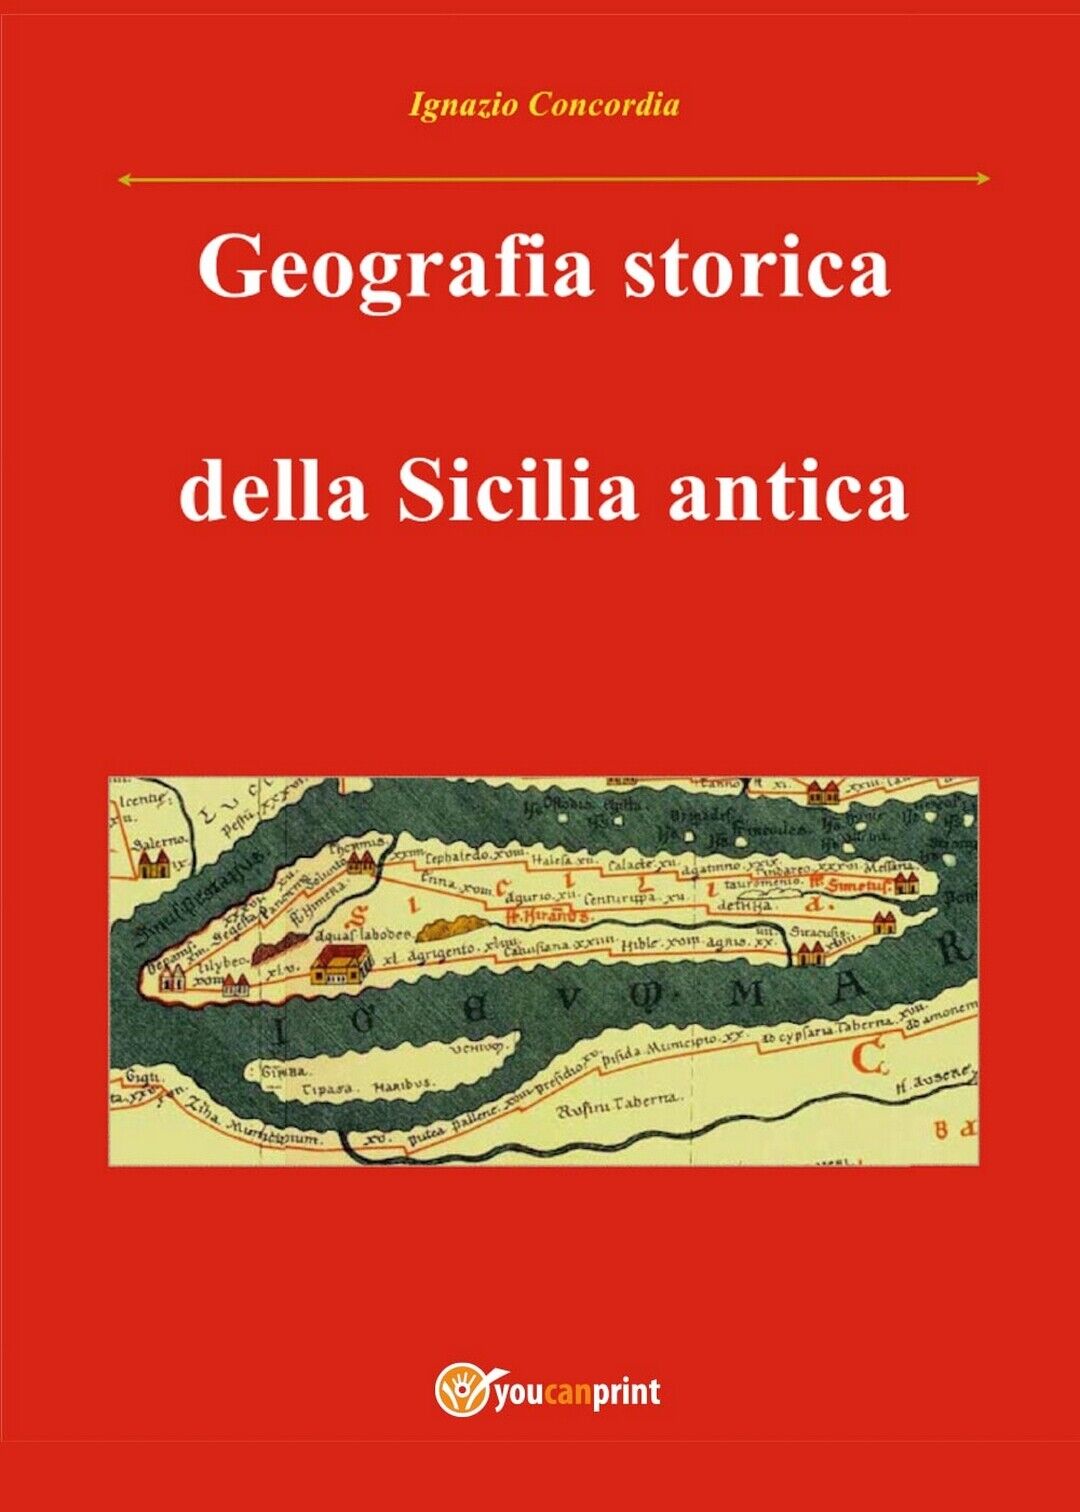 Geografia storica della Sicilia antica, Ignazio Concordia,  2016,  Youcanprint libro usato